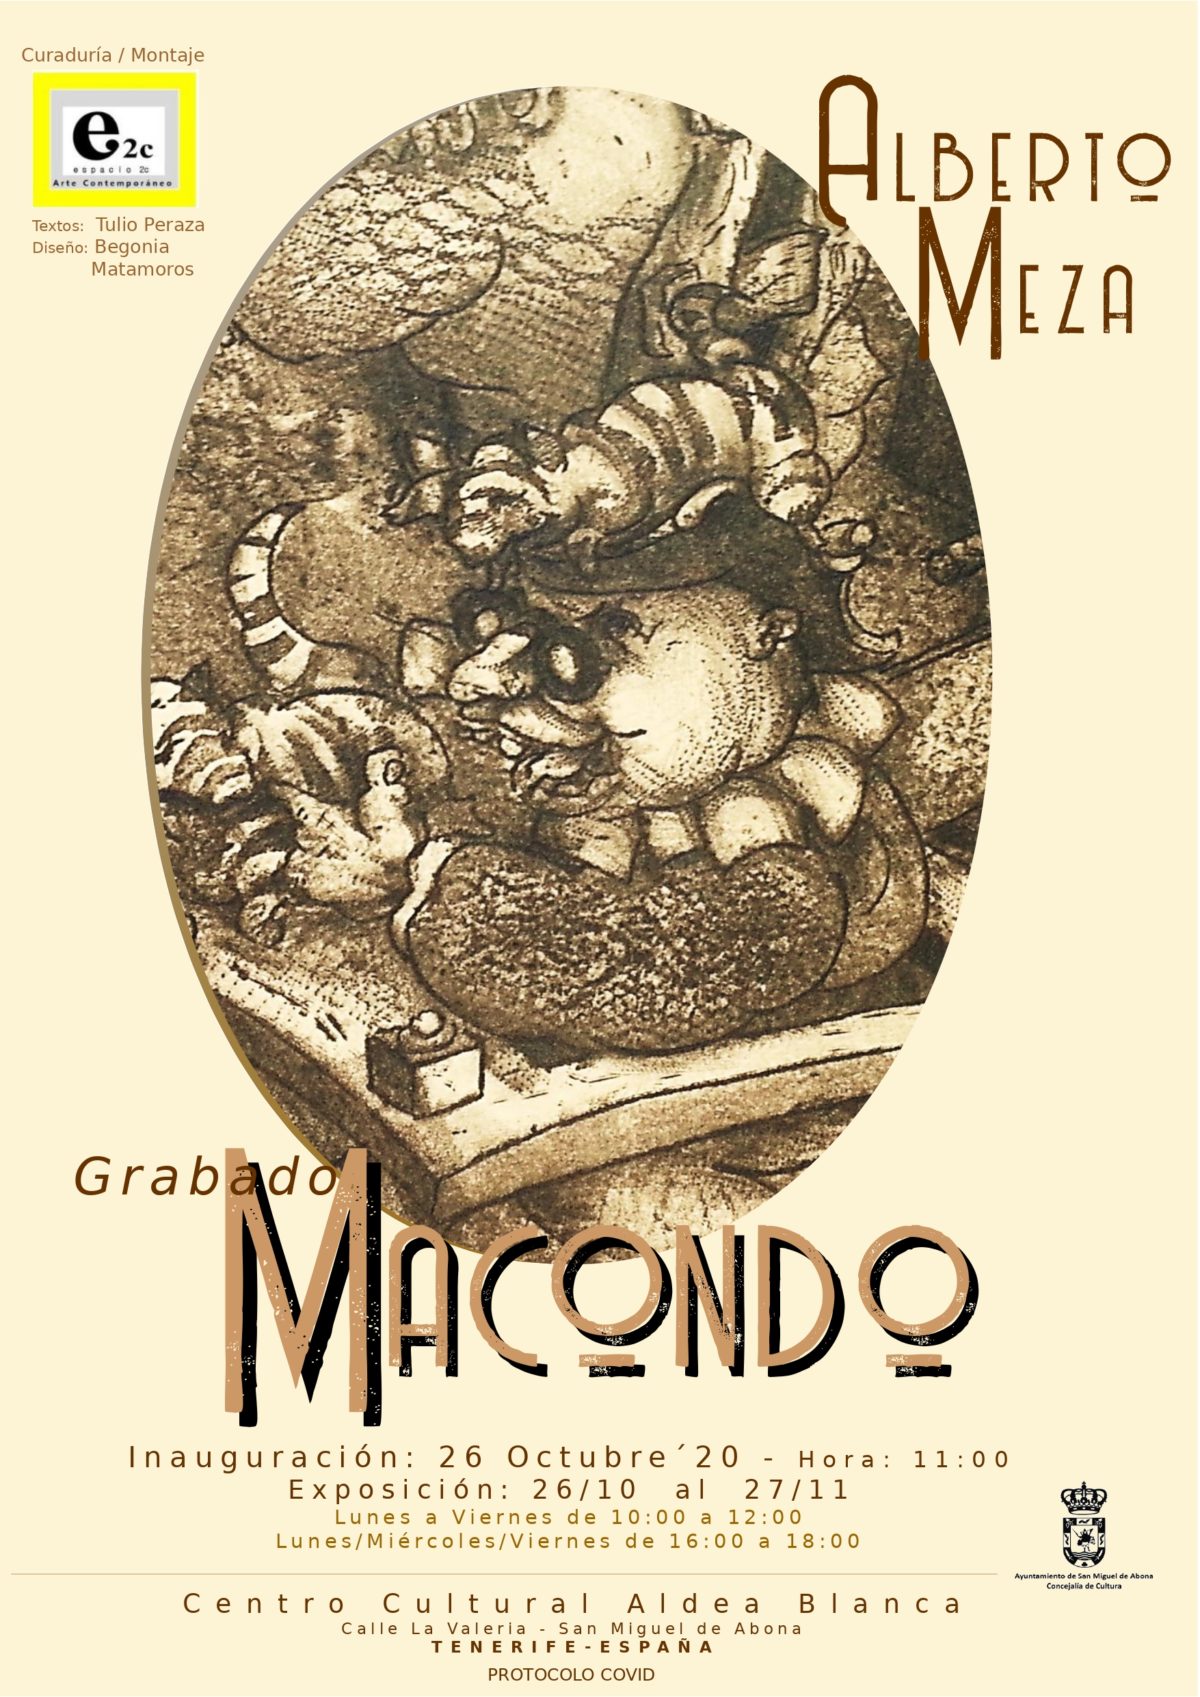 “Macondo” – Exposición de grabados de Alberto Meza